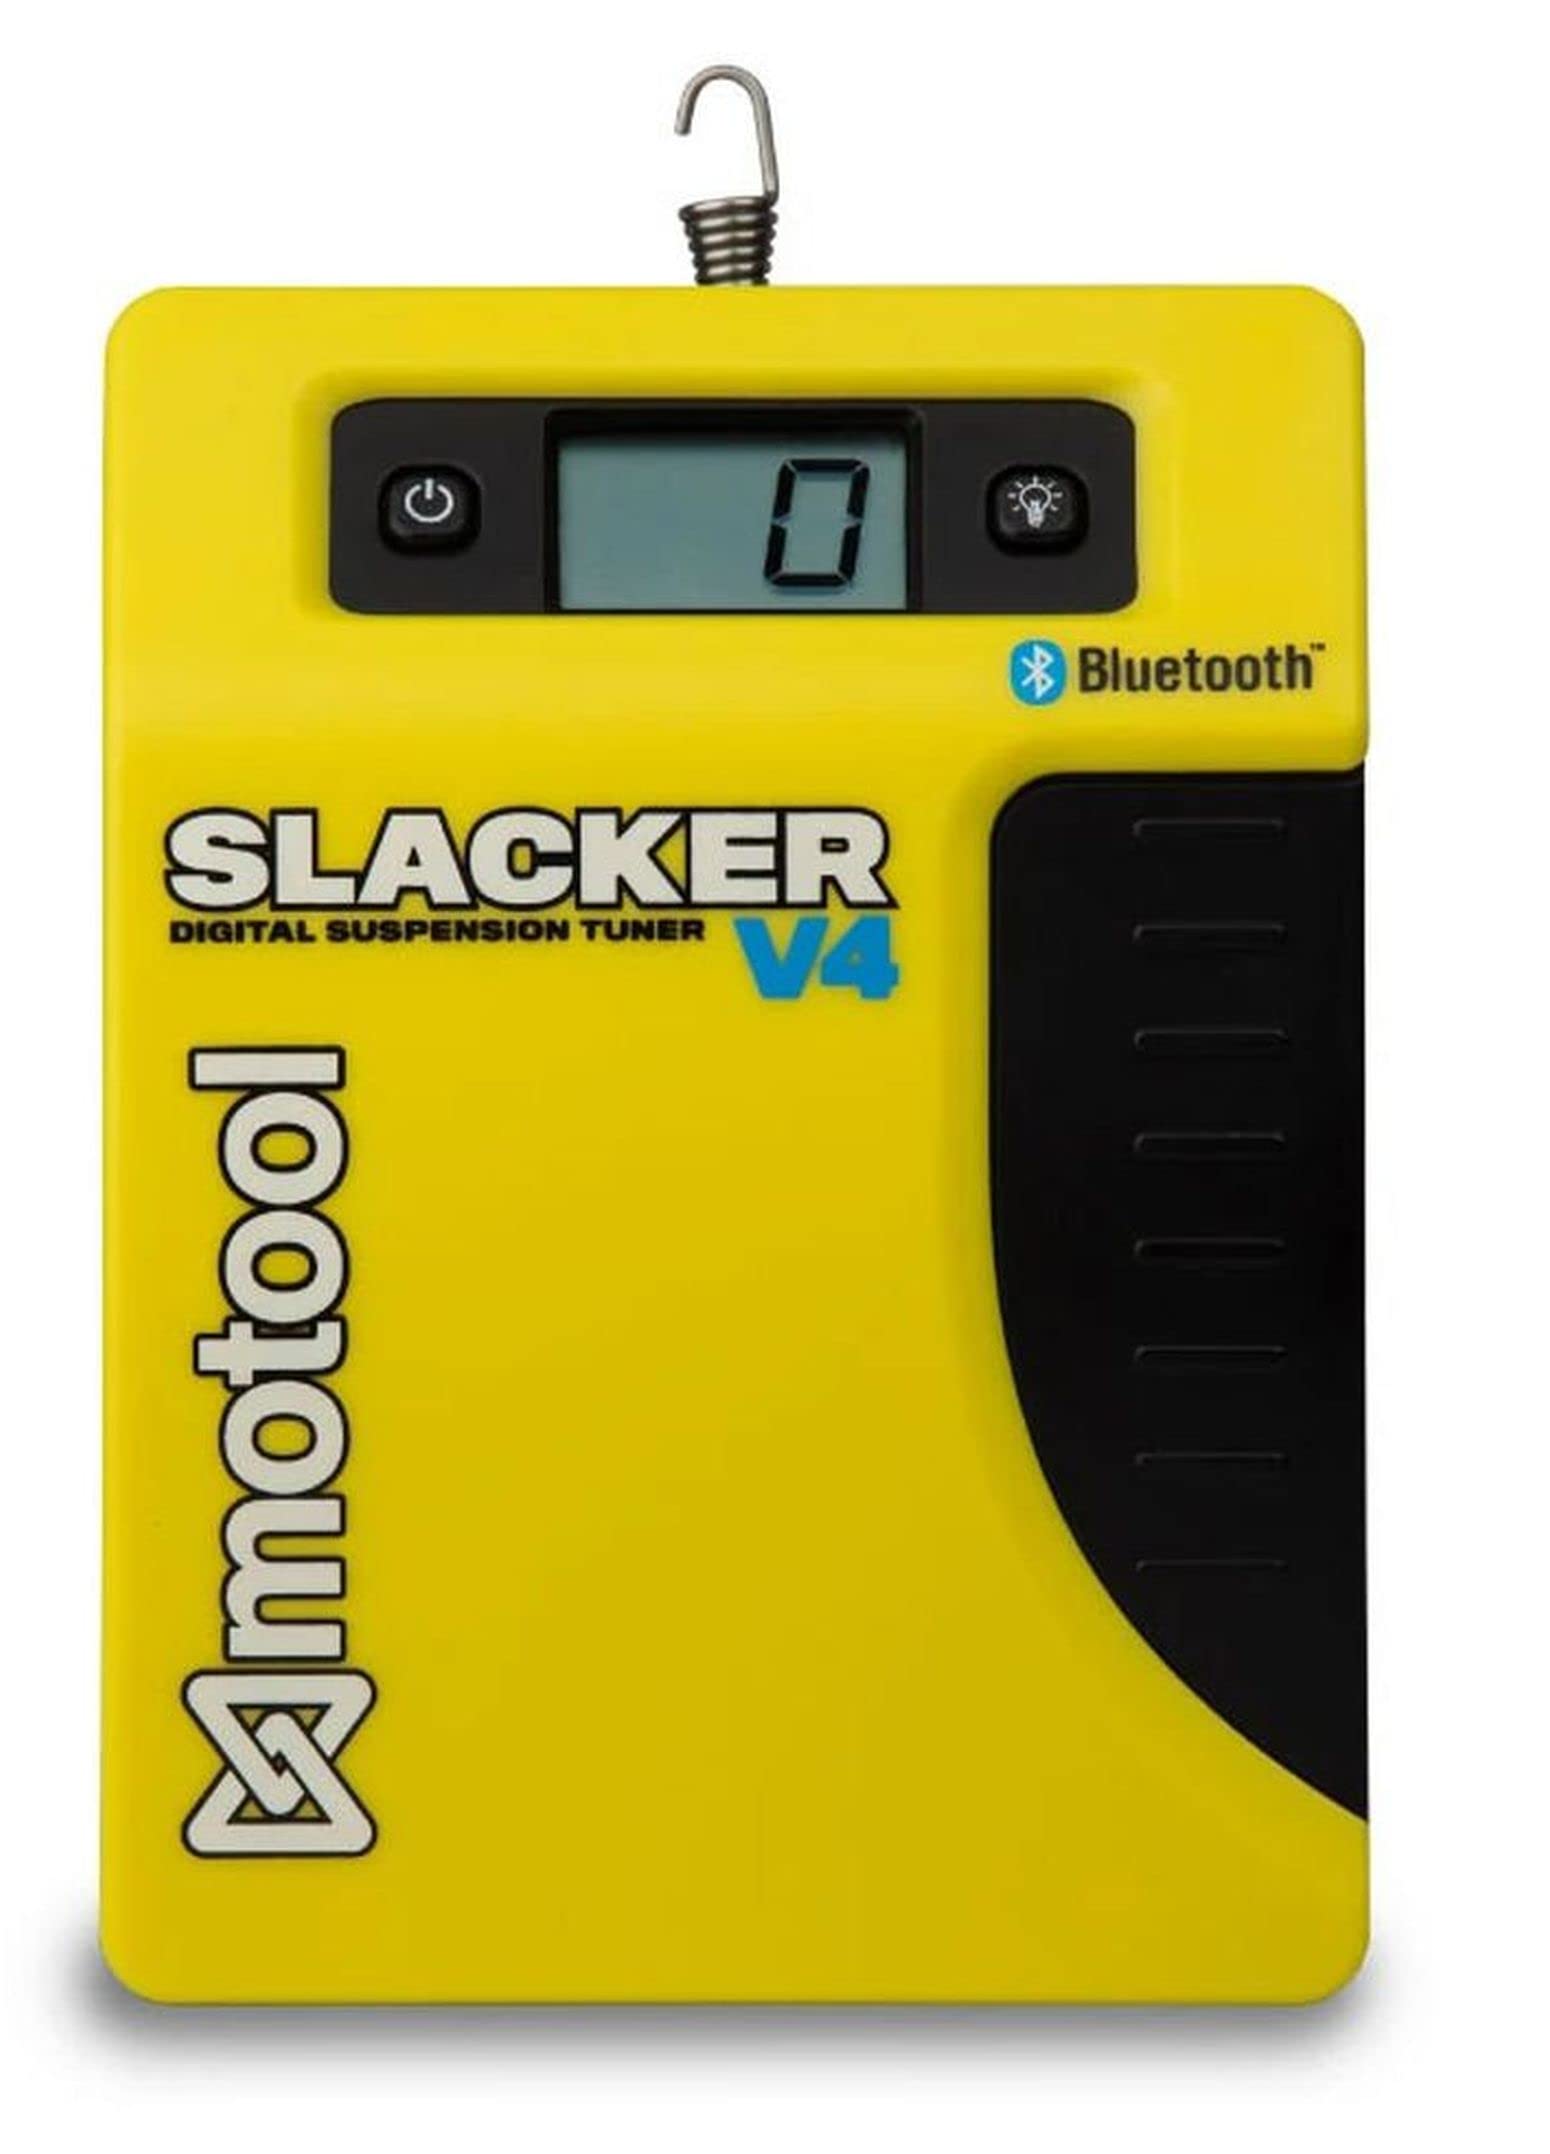 MOTOOL Digital Slacker V4 - Digitale Durchhang Lehre Sag mit Bluetooth und App von Generisch